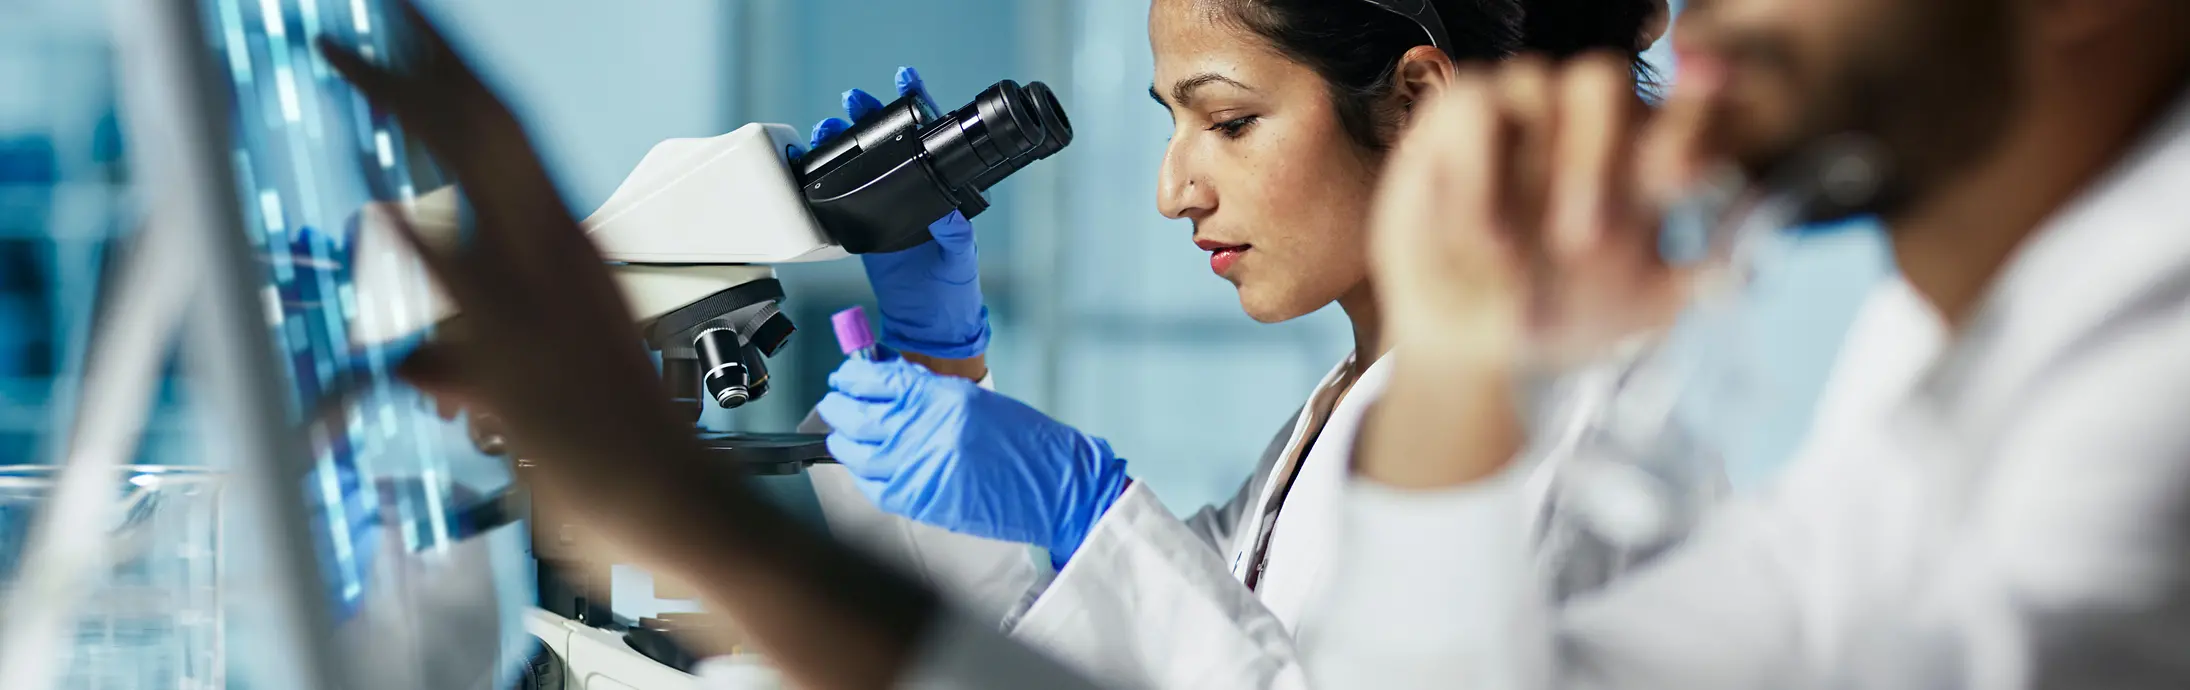 laboratorija s ženom koja sedi ispred mikroskopa, posmatra uzorak, i ispred nje muškarac s bradom gleda u ekran